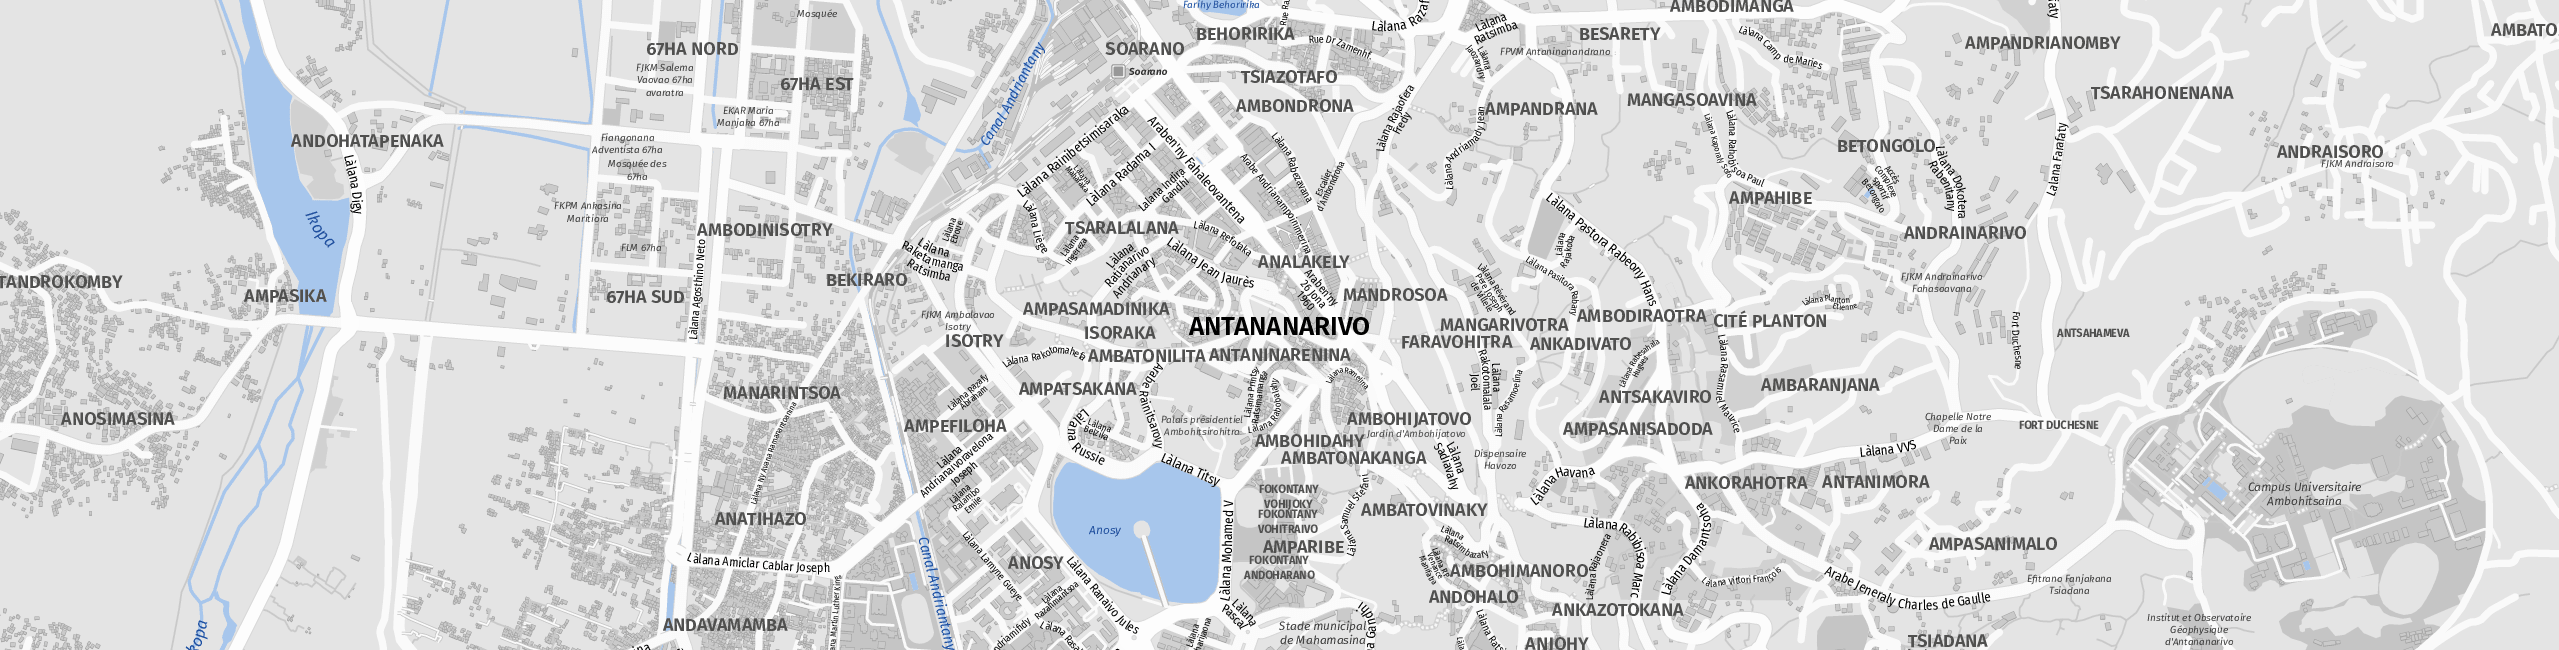 Stadtplan Antananarivo zum Downloaden.